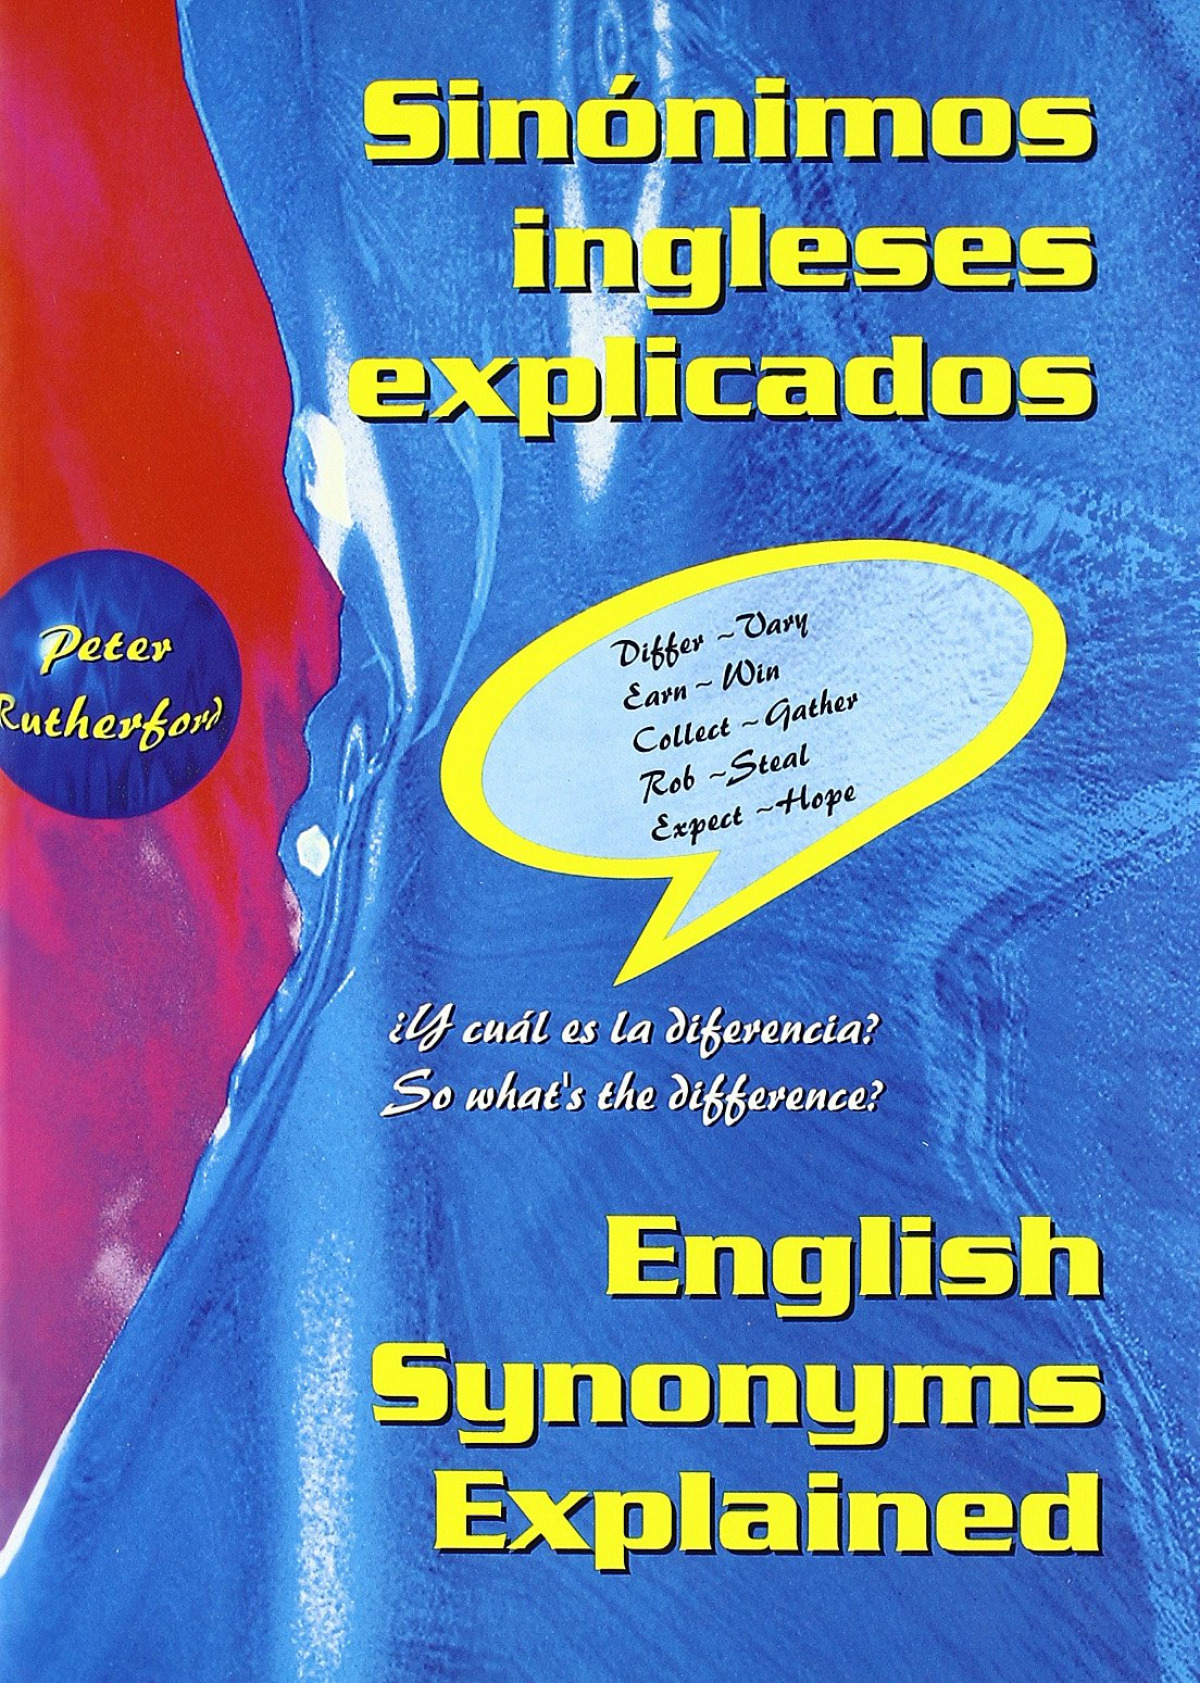 Revisión Matemáticas persona que practica jogging Sinónimos ingleses explicados = English synonyms explained - Librerias  Nobel.es